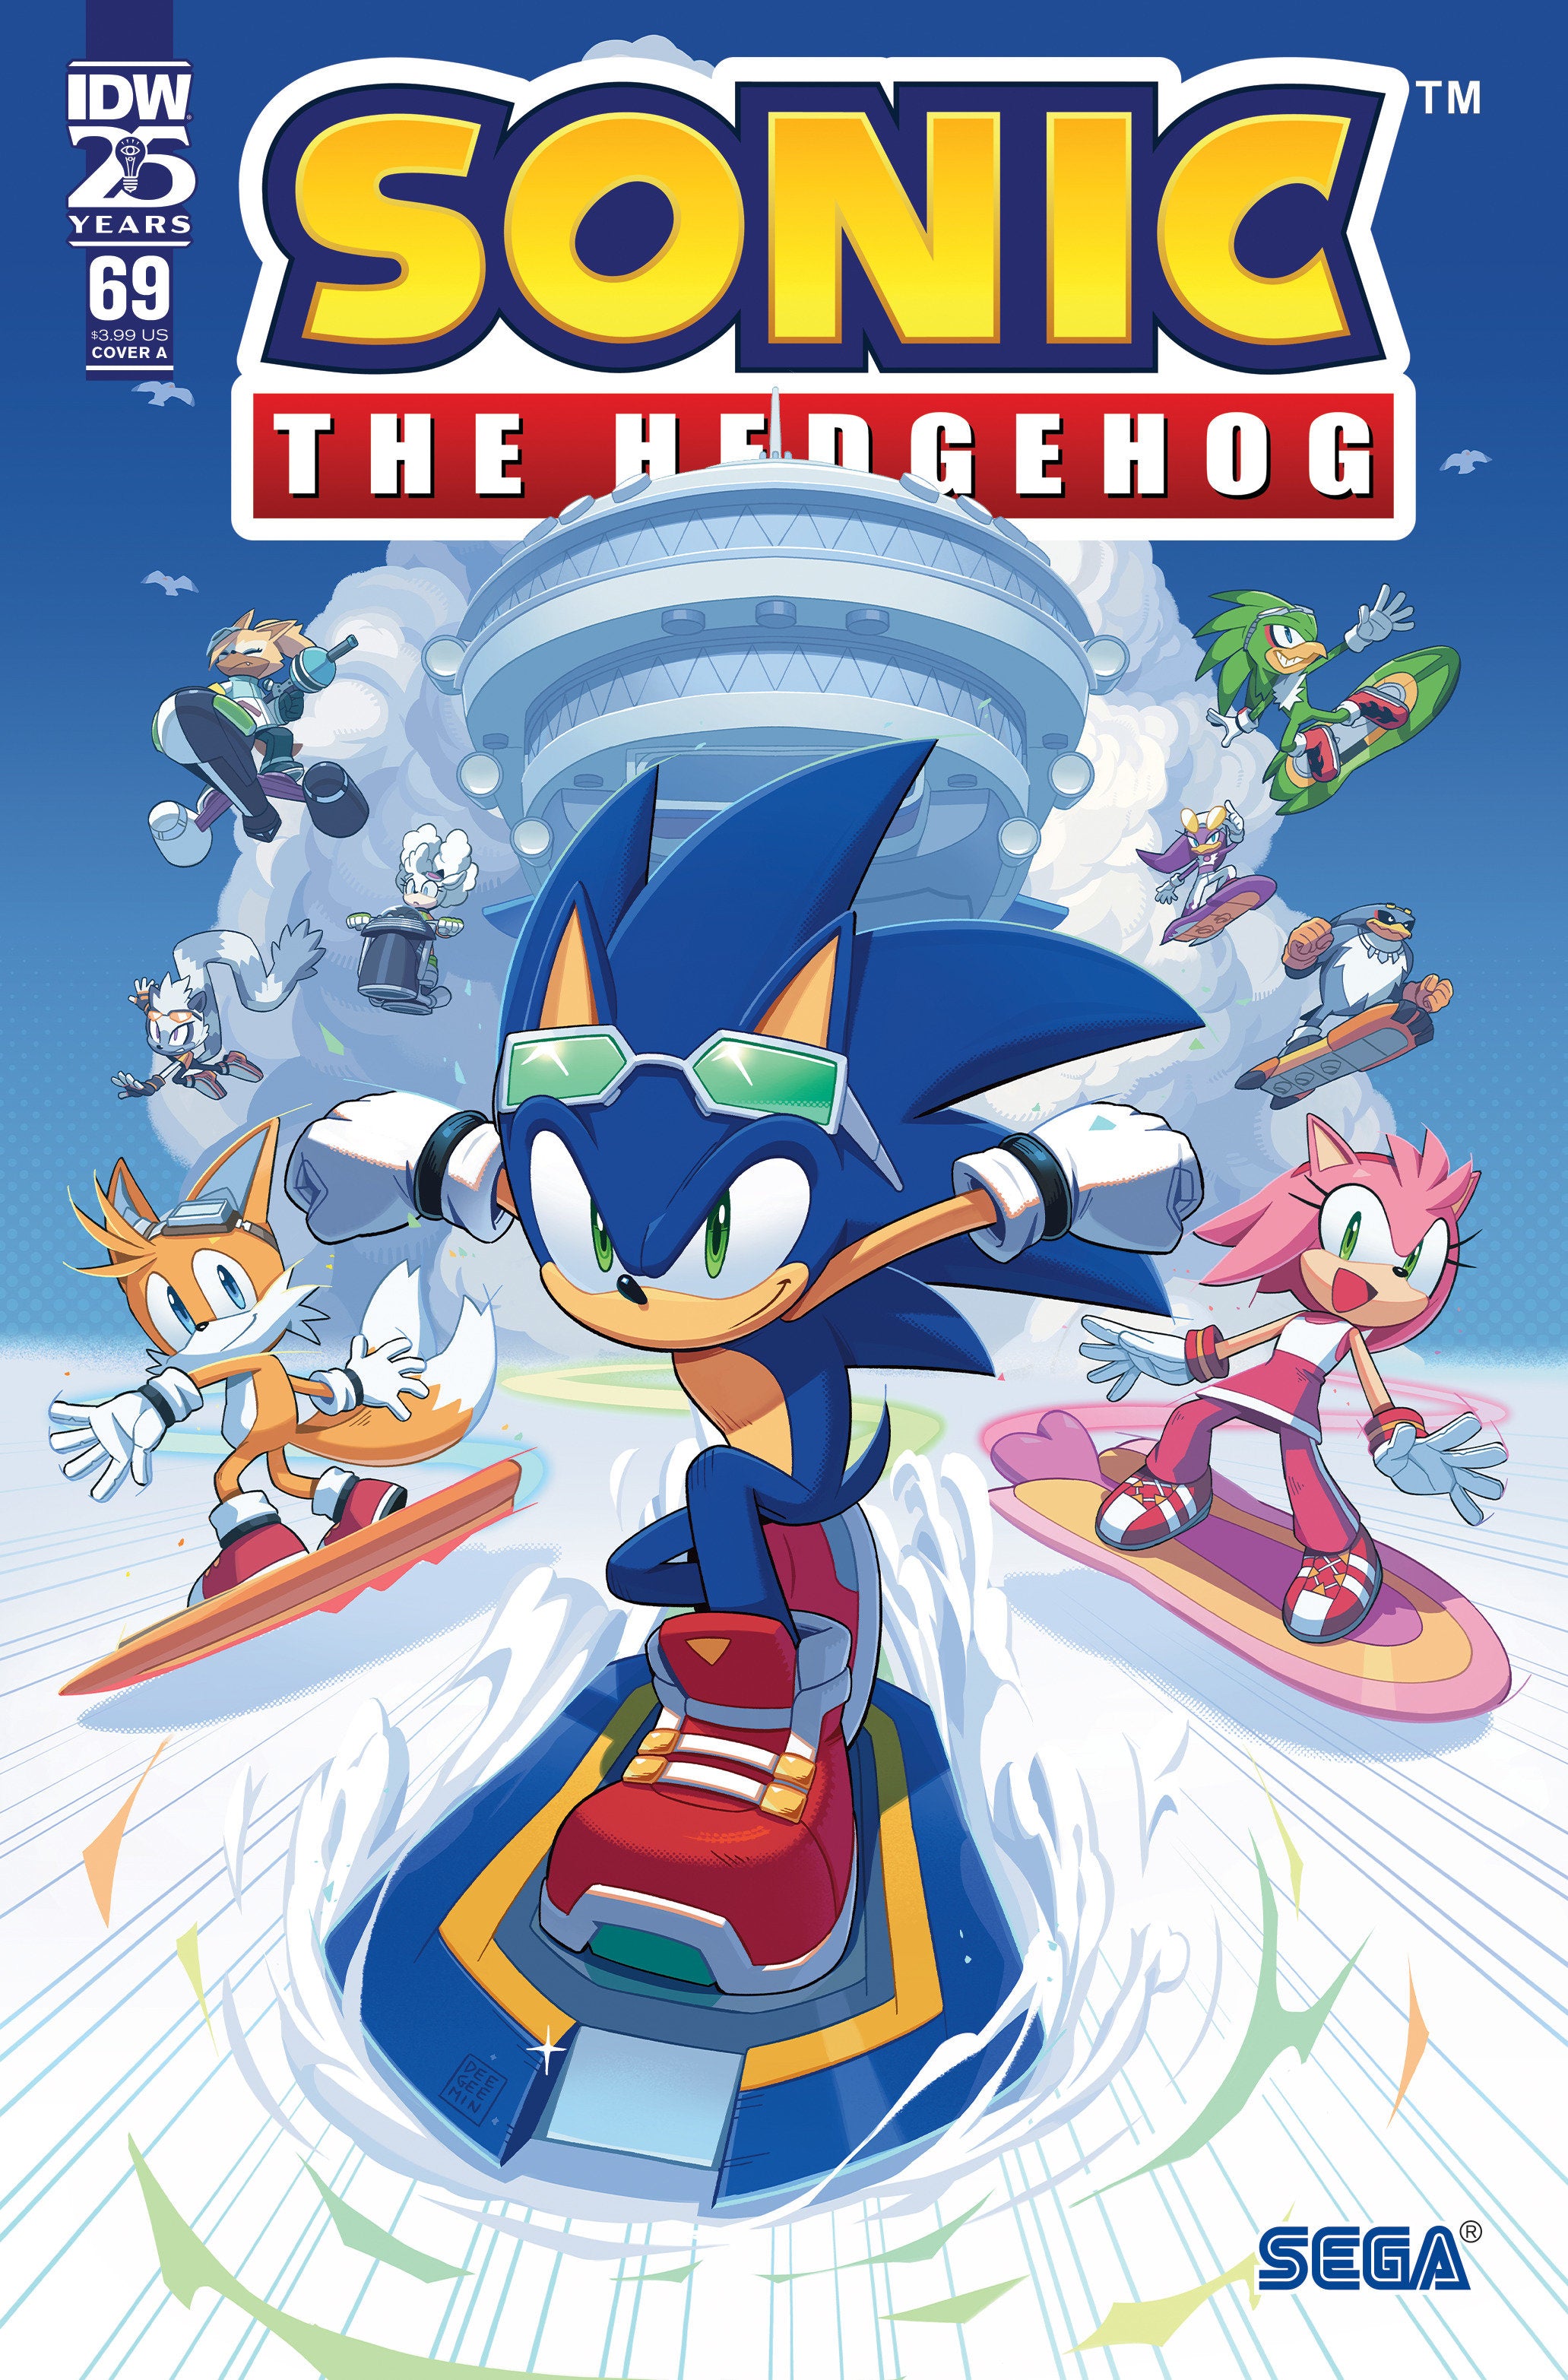 Sonic The Hedgehog #69 Cover A (Kim) | L.A. Mood Comics and Games